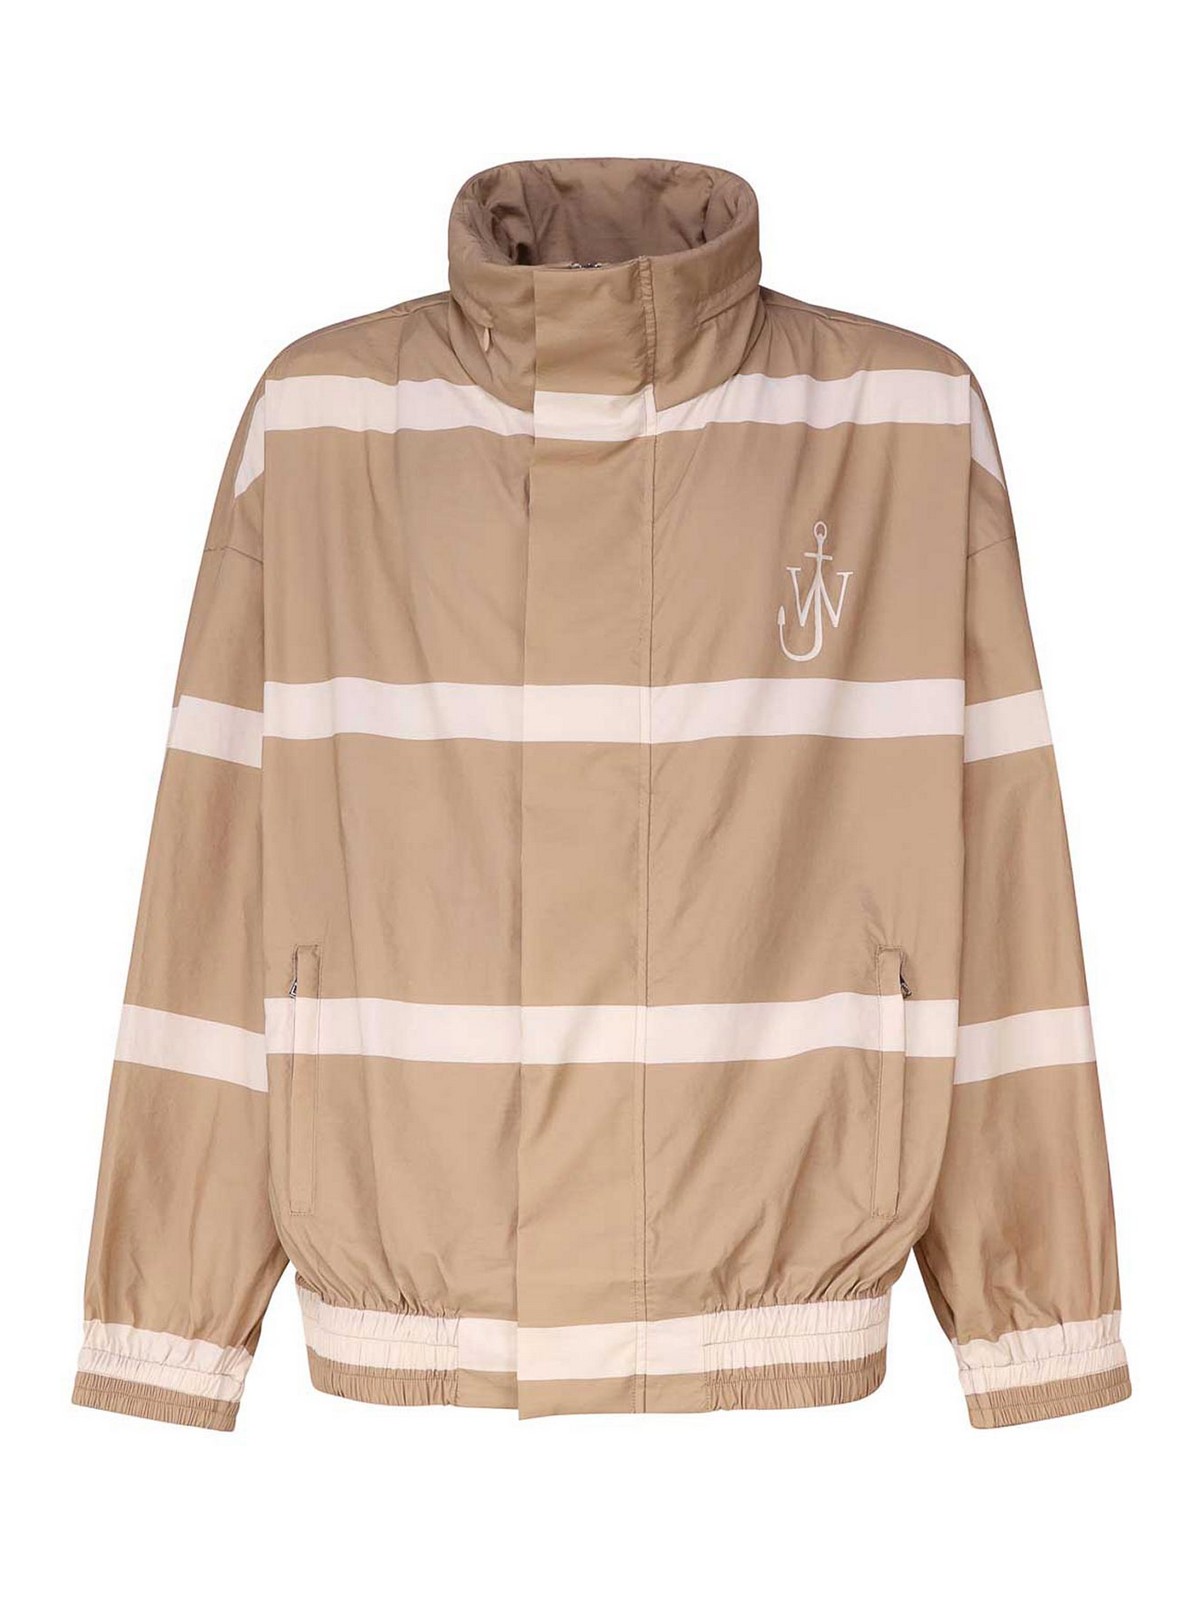 Shop Jw Anderson Beige Striped Hooded Jacket